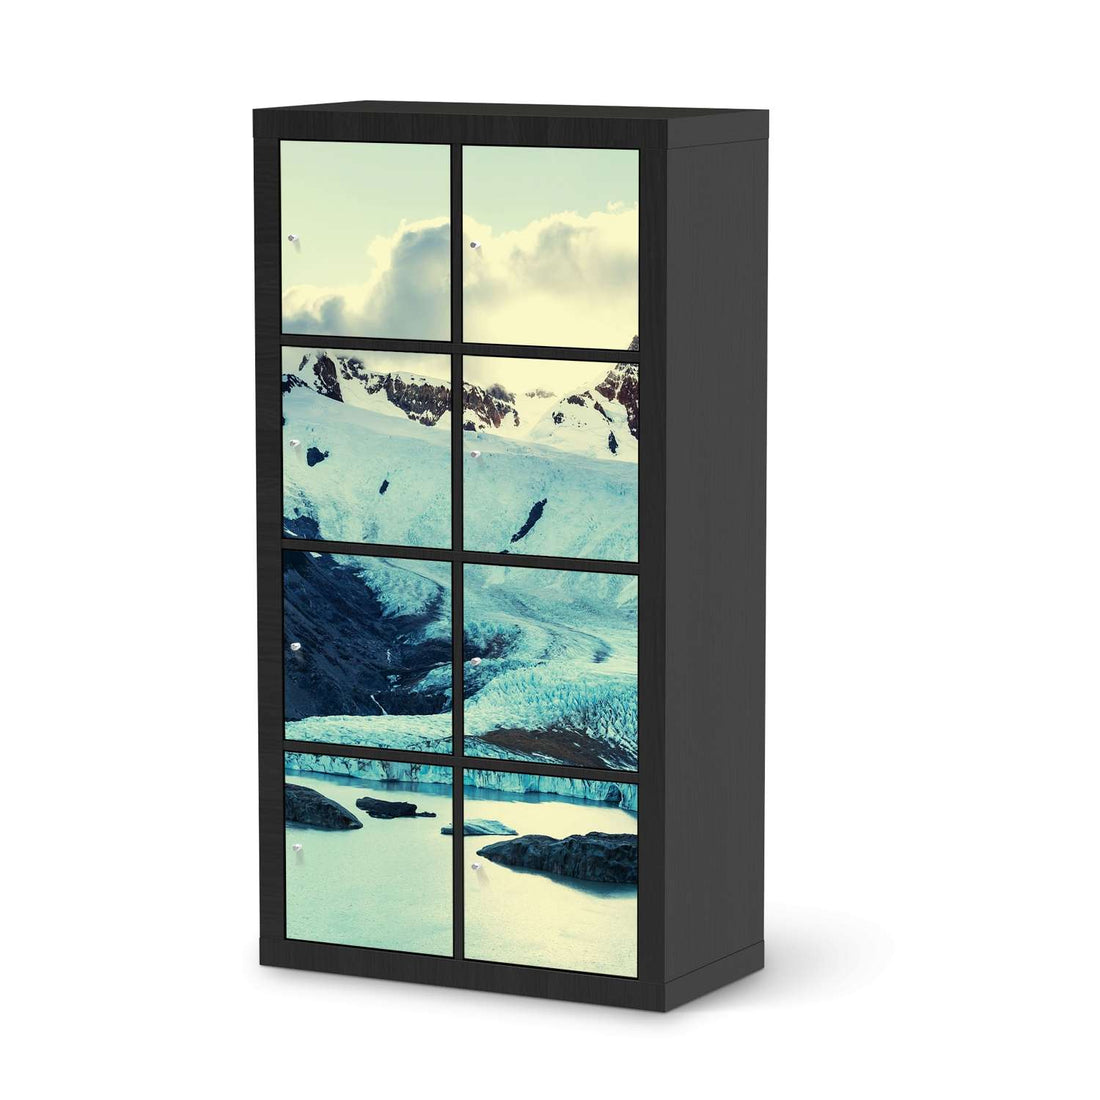 Folie für Möbel Patagonia - IKEA Kallax Regal 8 Türen - schwarz